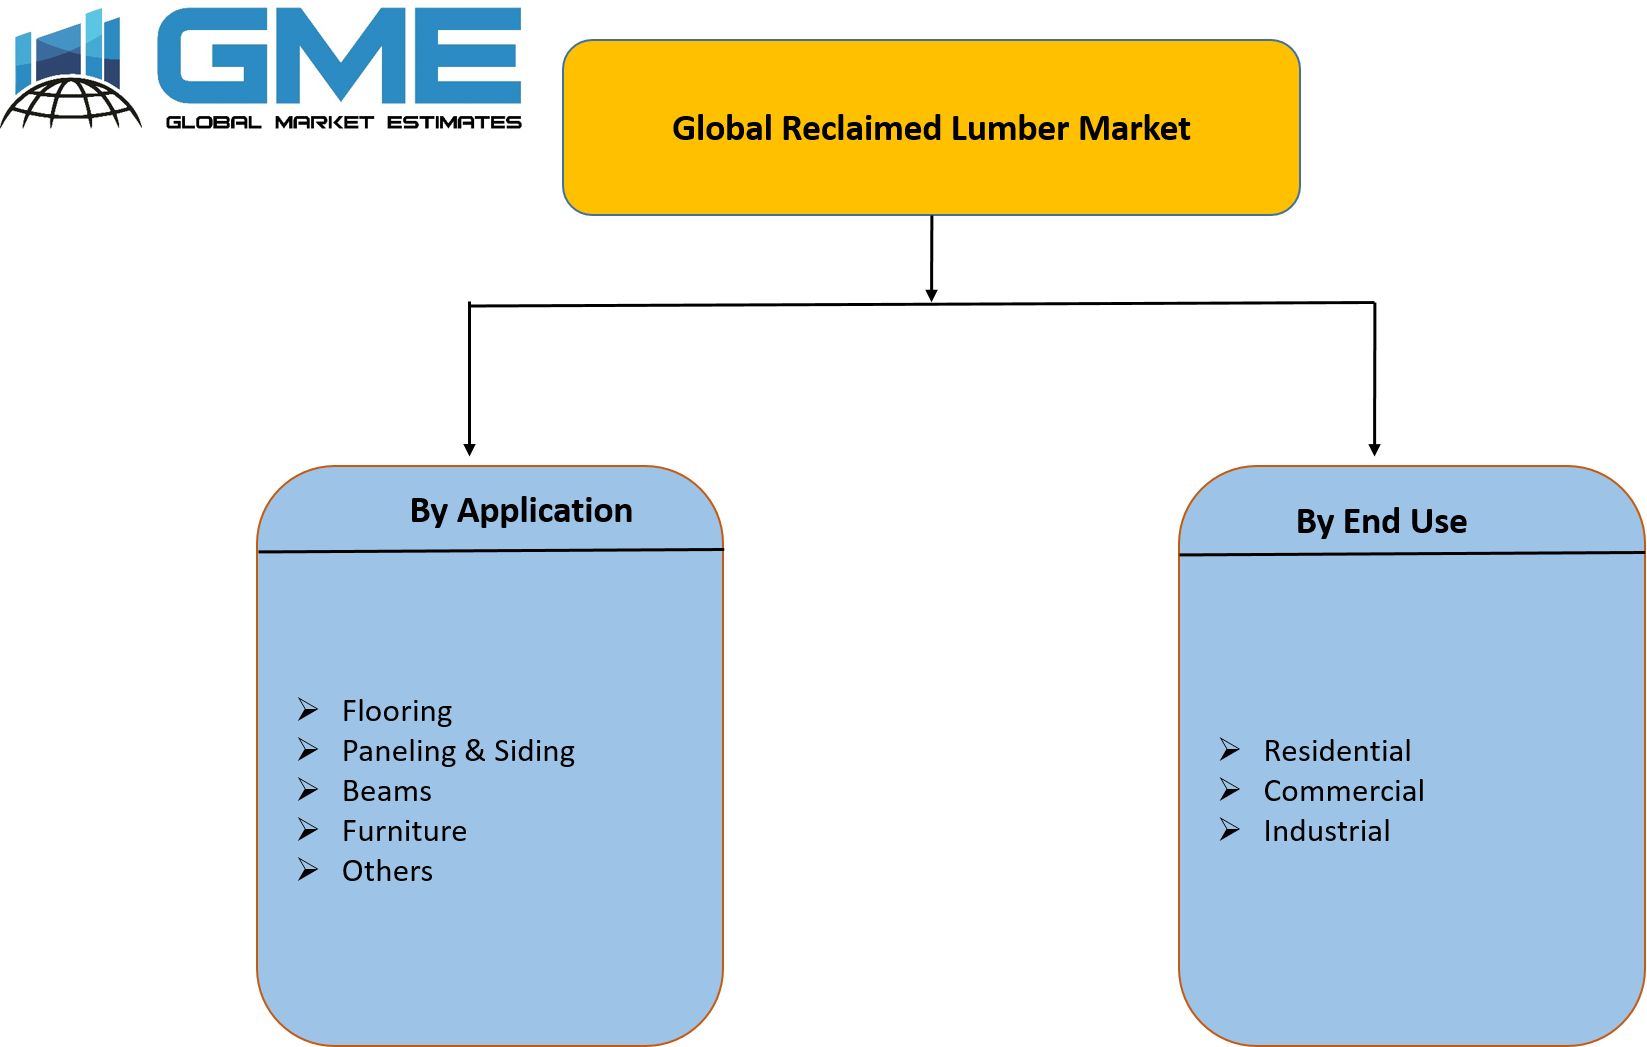 Global Reclaimed Lumber Market Segmentation